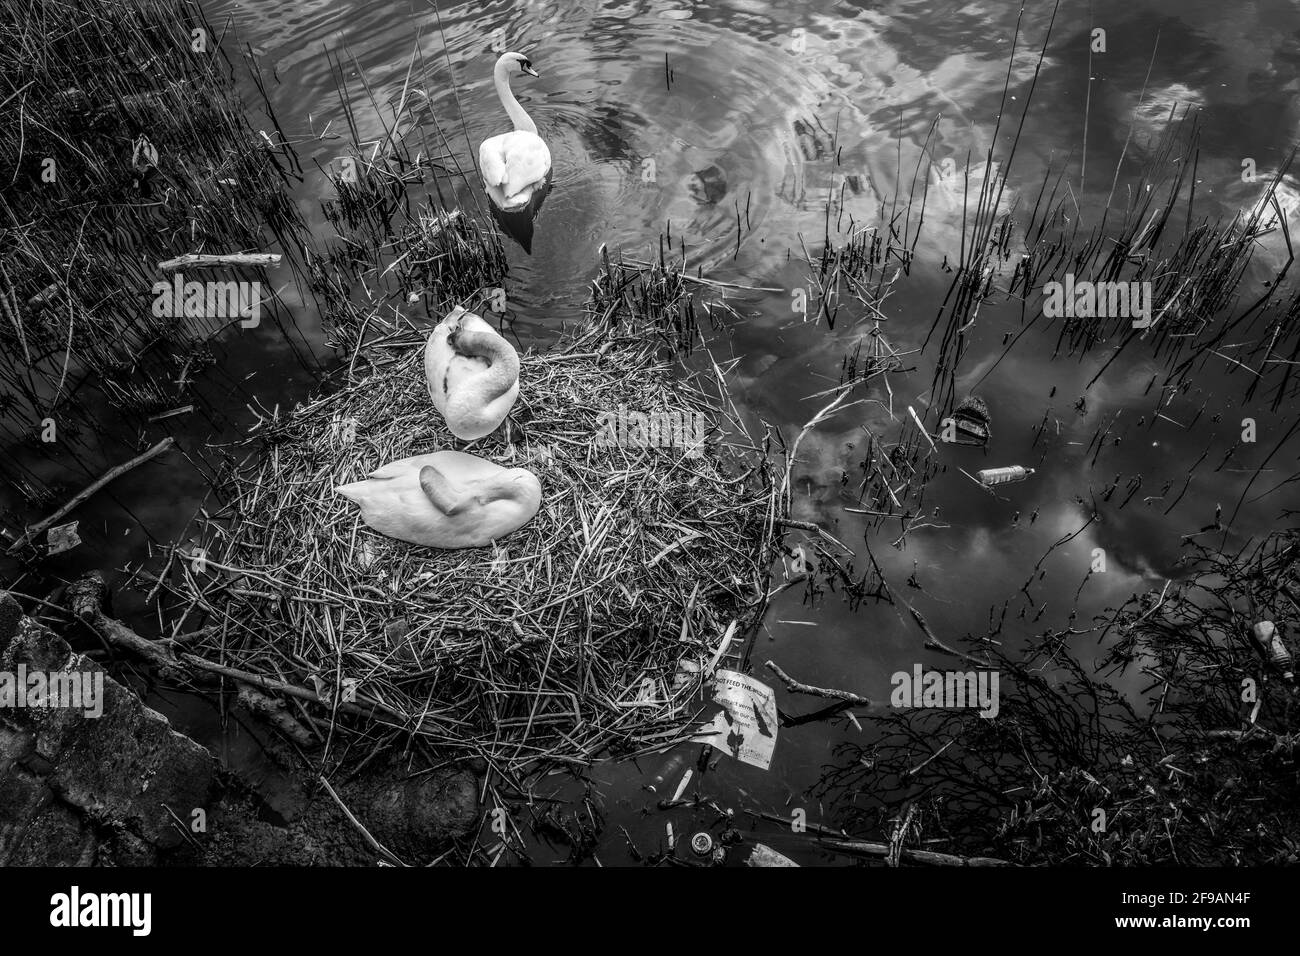 Weibliche stumpfe Schwanin sitzt auf ihrem Nest in einem mit Plastik verschmutzten See. Stockfoto